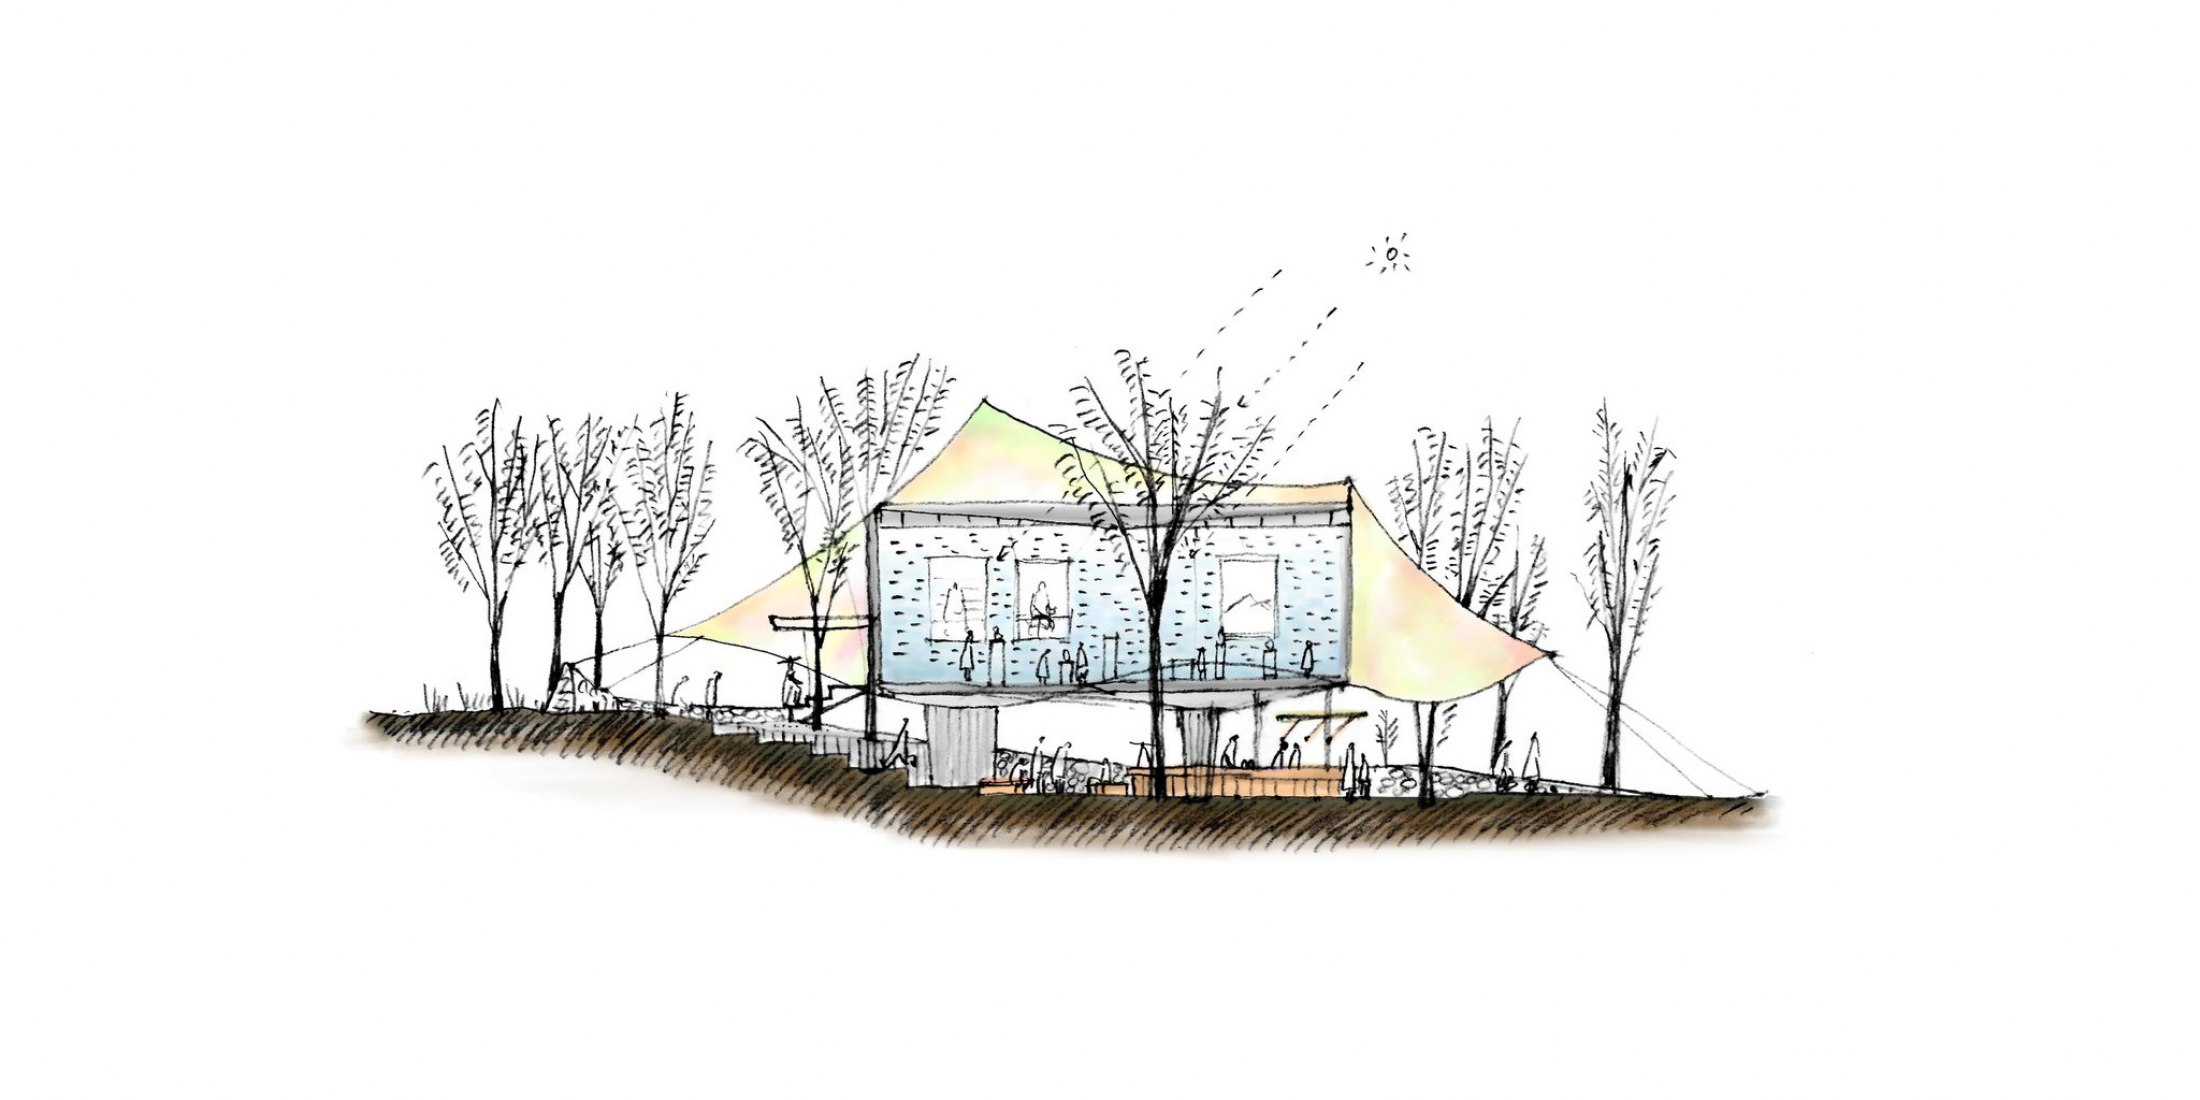 Dibujo conceptual de la propuesta para la exposición, 2023. Imagen cortesía de o+h arquitectos